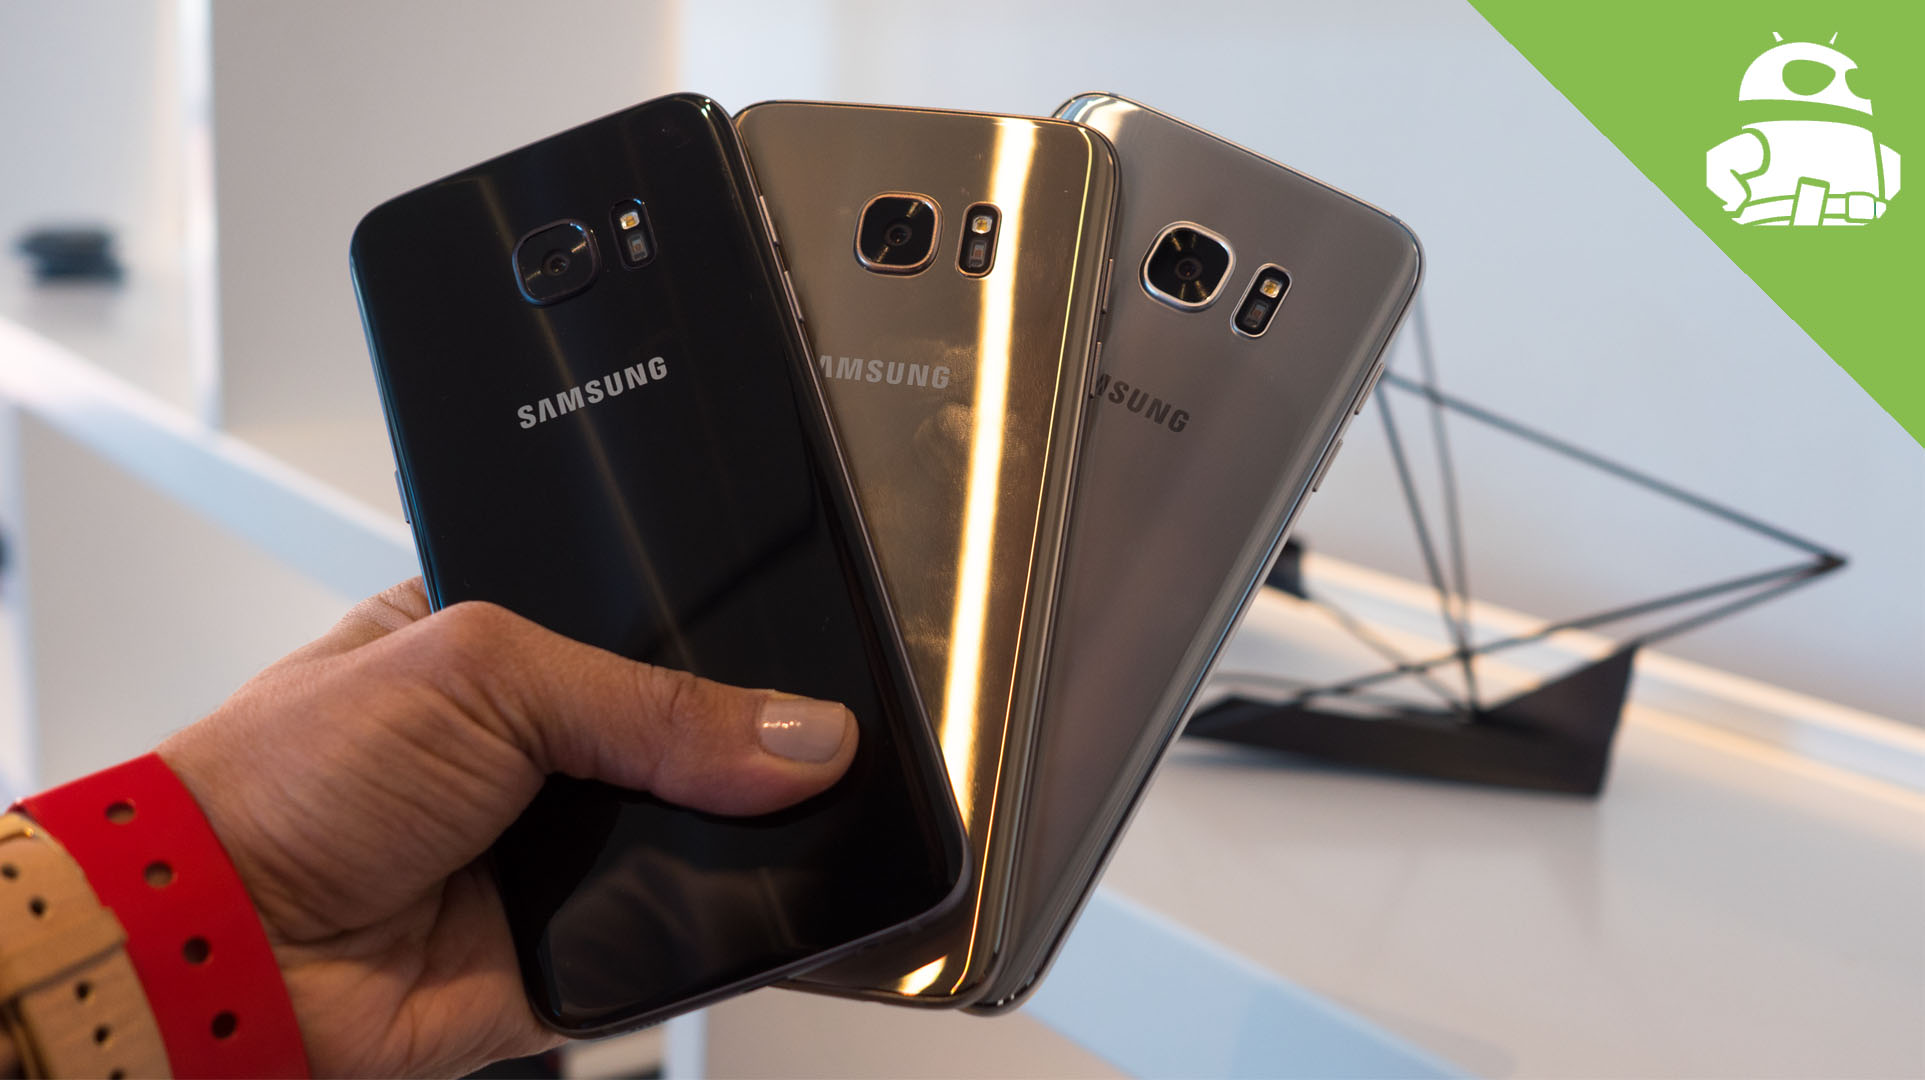 dood gaan Proportioneel Compliment Samsung Galaxy S7 Edge color comparison